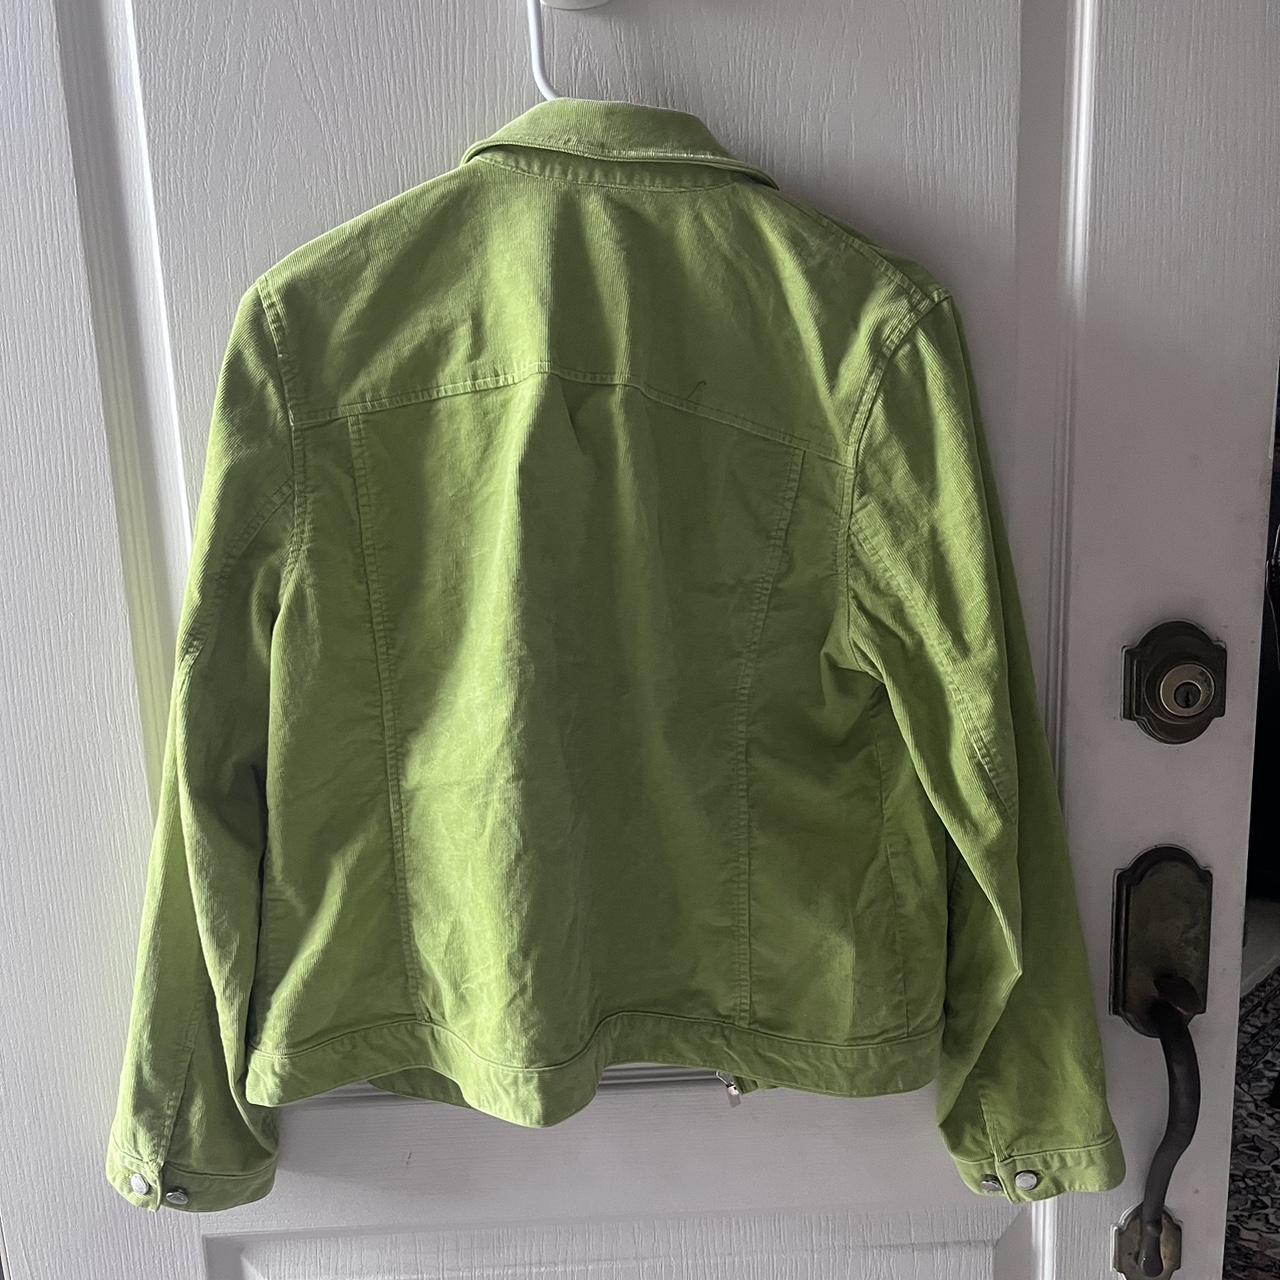 Jones New York Women's Green Jacket | Depop